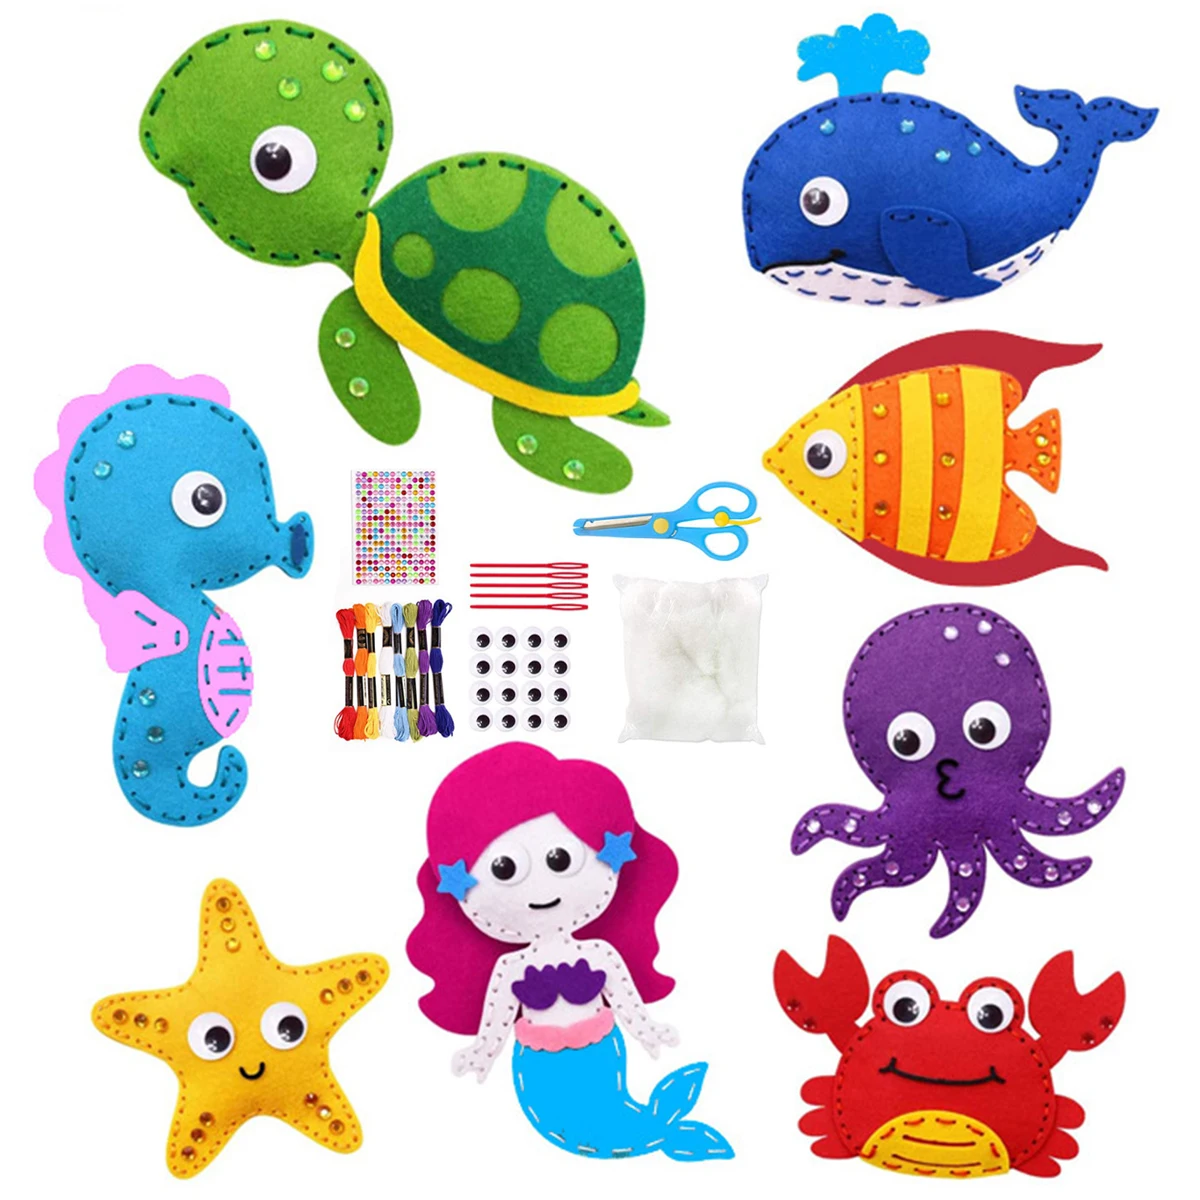 

Набор для шитья с морскими животными, детский набор для шитья с морскими животными, мягкие игрушки из фетра и плюша, набор для шитья, для обучения